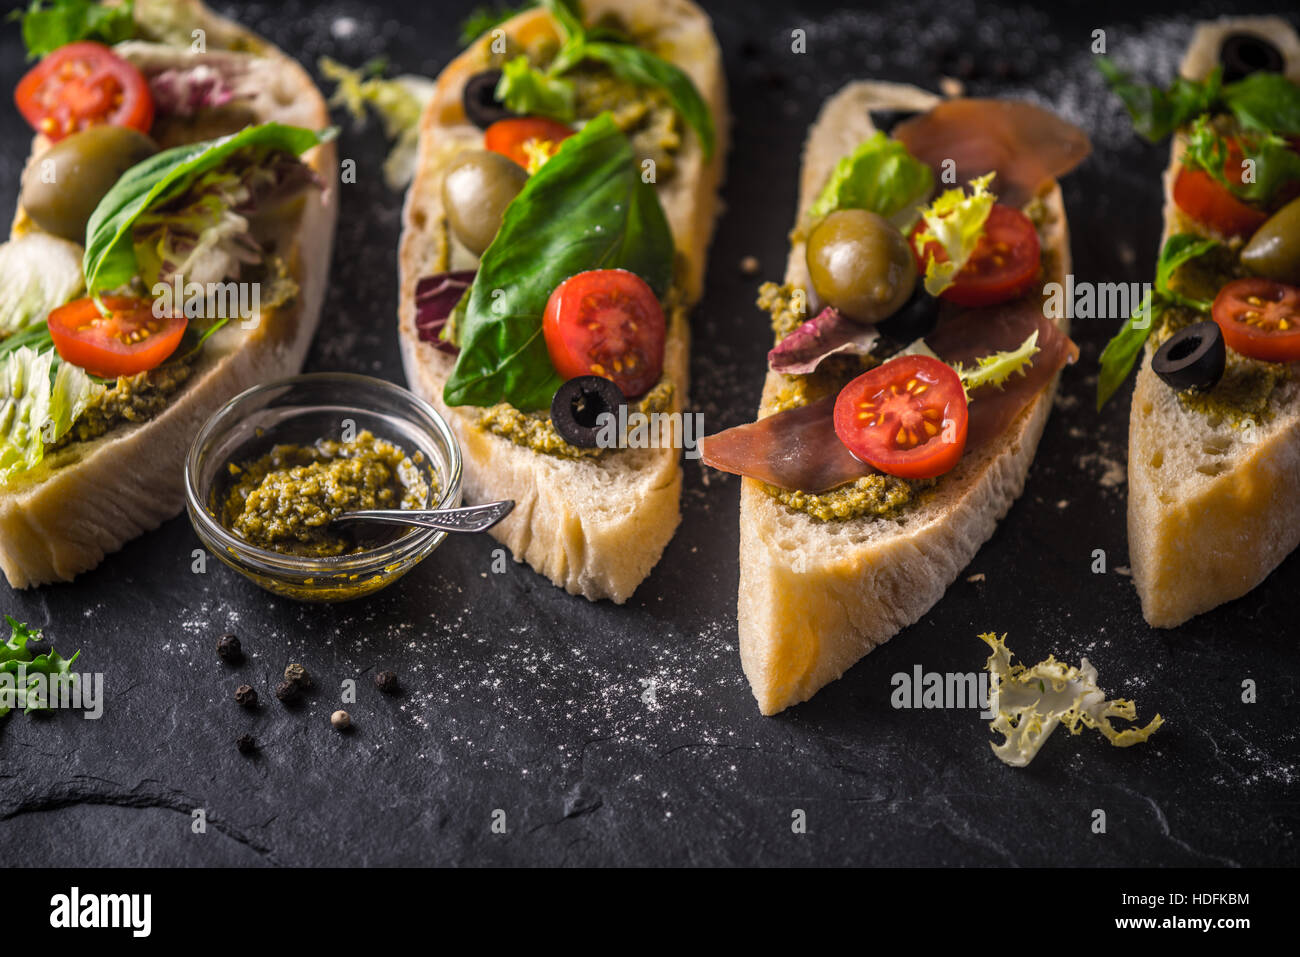 Tranches de pain ciabatta aux olives, tomates et basilic sur la table en pierre noire Banque D'Images